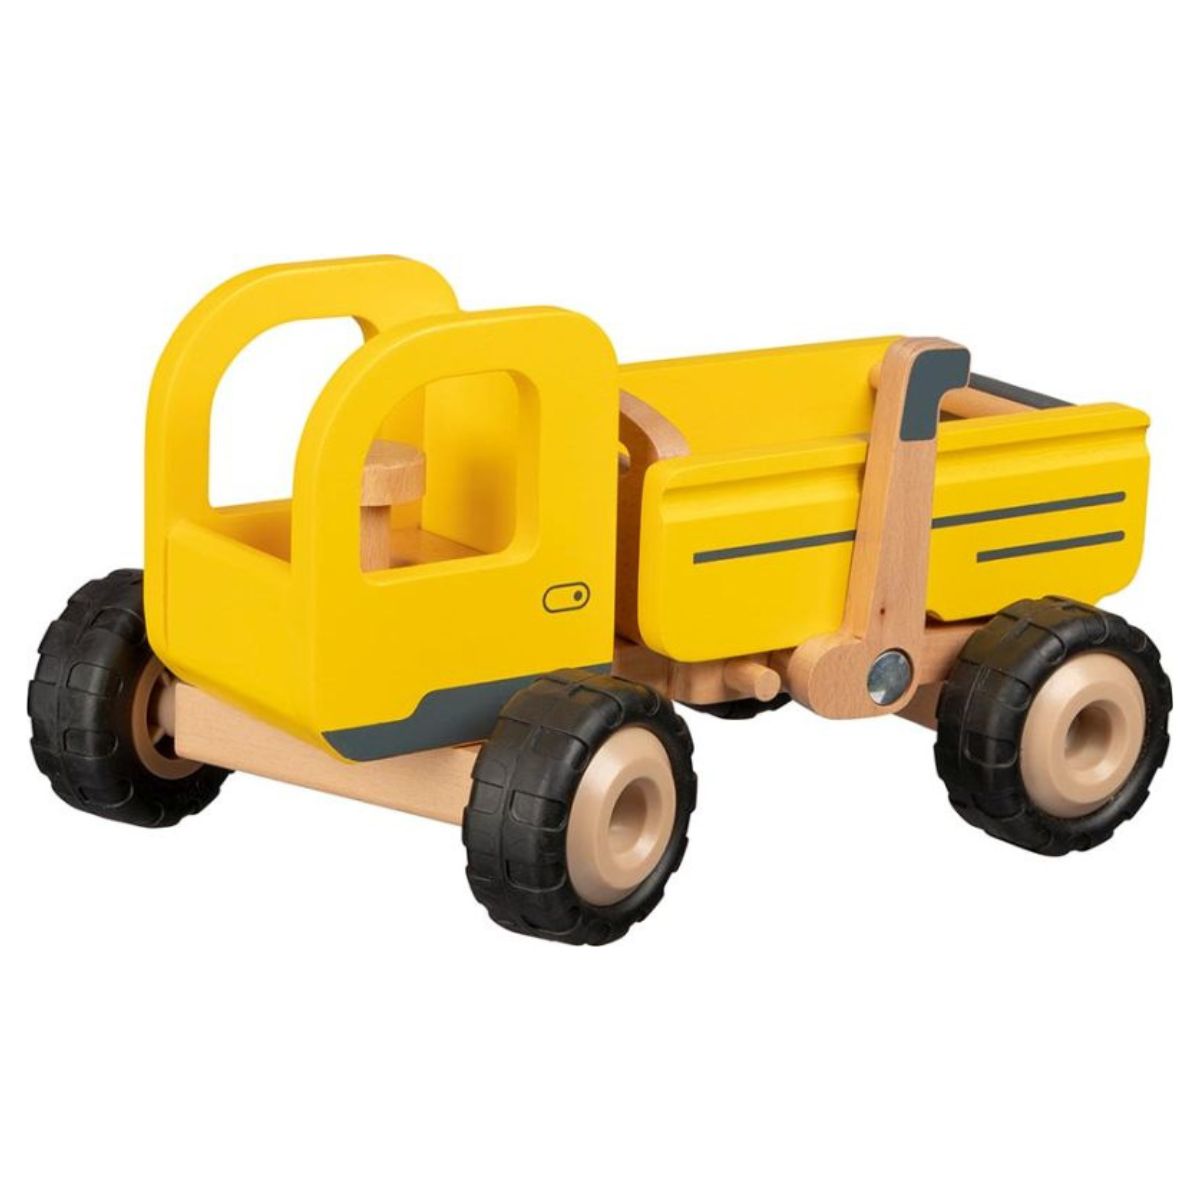 Гокі: Дерев’яна вантажівка з сміттєзвалищем